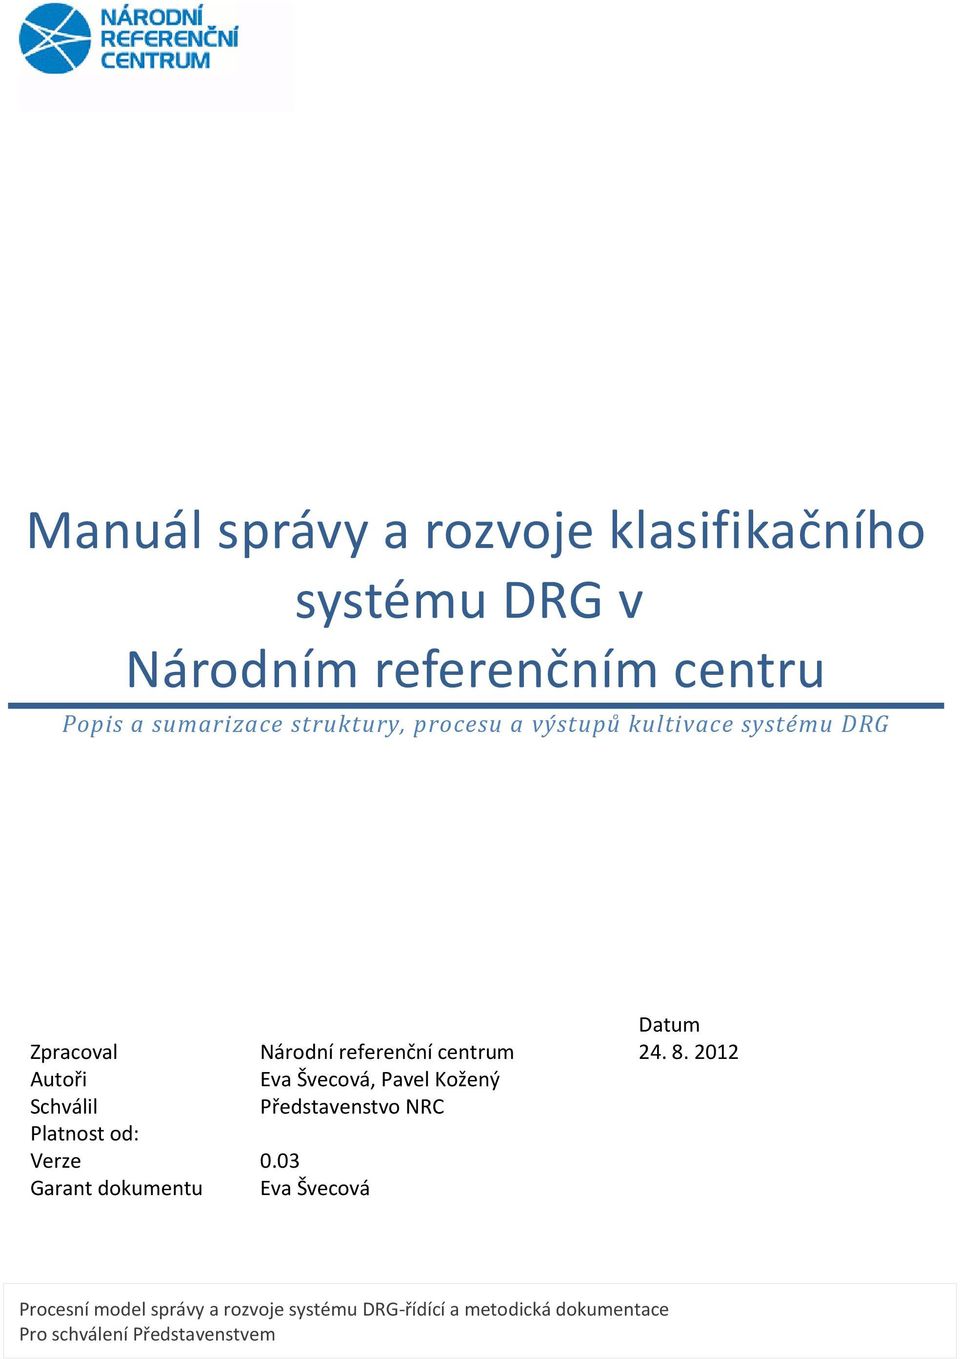 2012 Autoři Eva Švecová, Pavel Kožený Schválil Představenstvo NRC Platnost od: Verze 0.